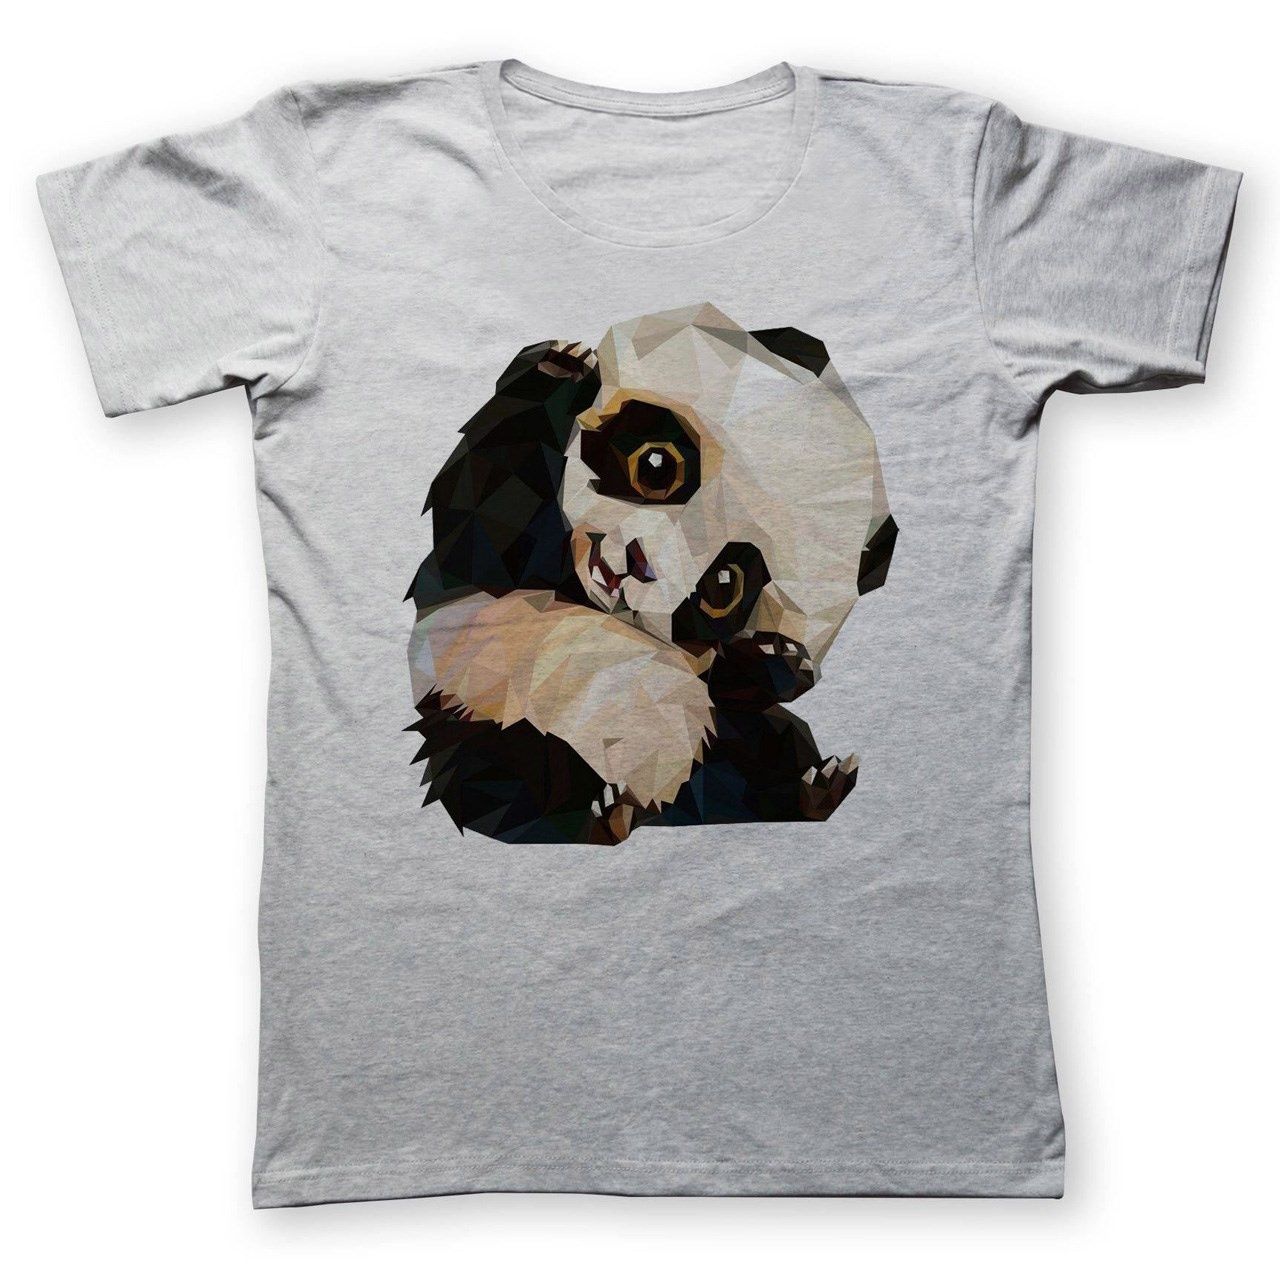 تی شرت به رسم طرح پاندا کد 233 -  - 1